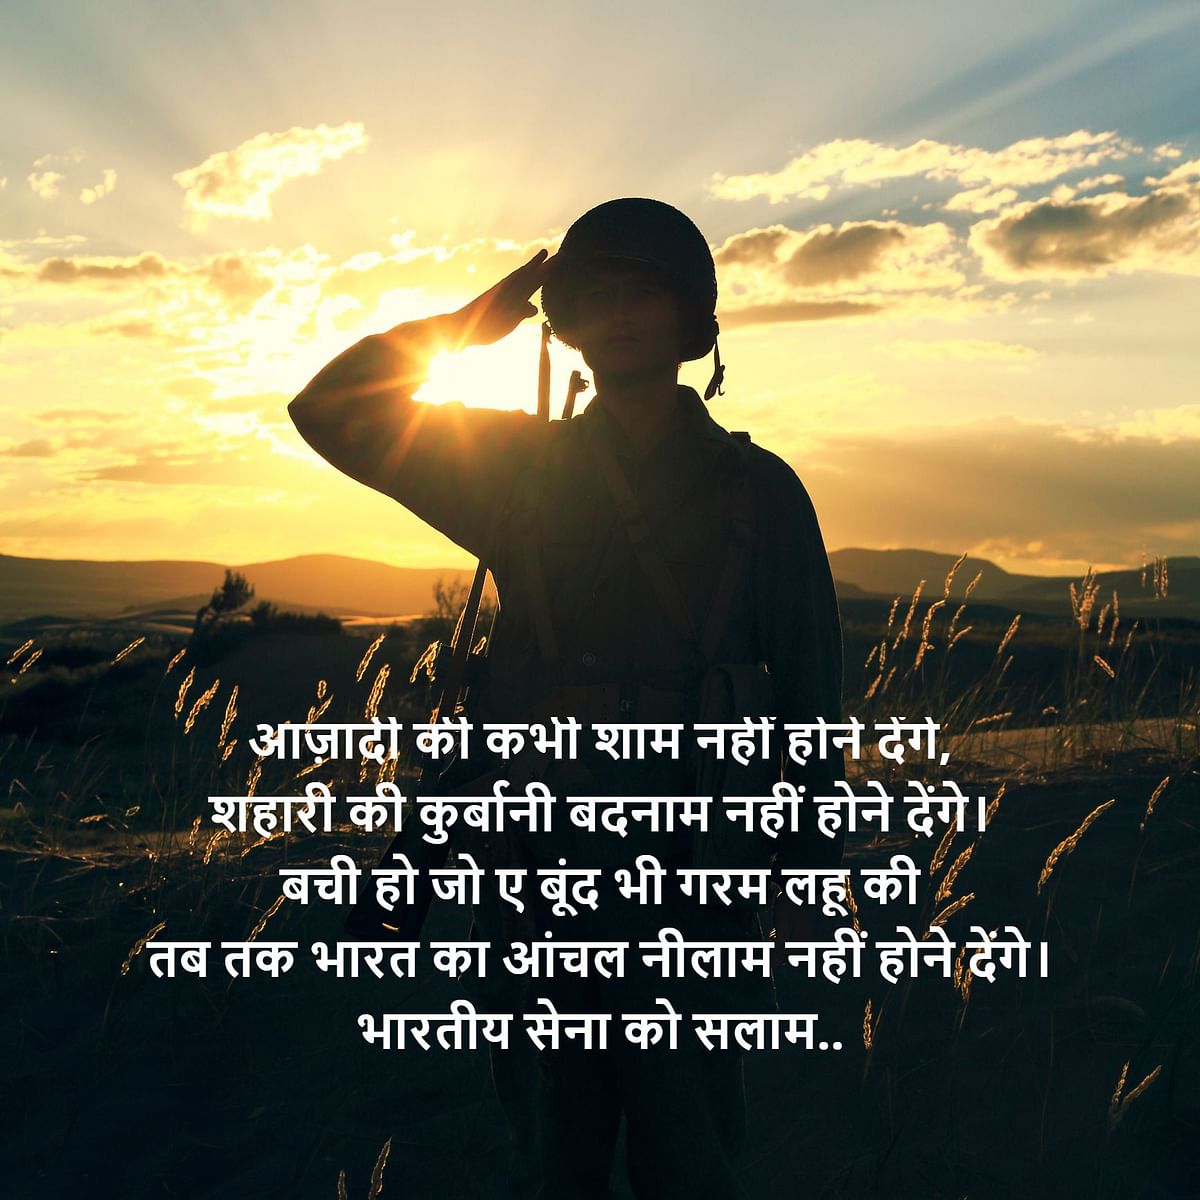 इस दिन हर किसी में भारतीय होने का गर्व दिखाई पड़ता है. लोग एक-दूसरे को मैसेज भेजकर सेना दिवस की बधाई देते हैं.